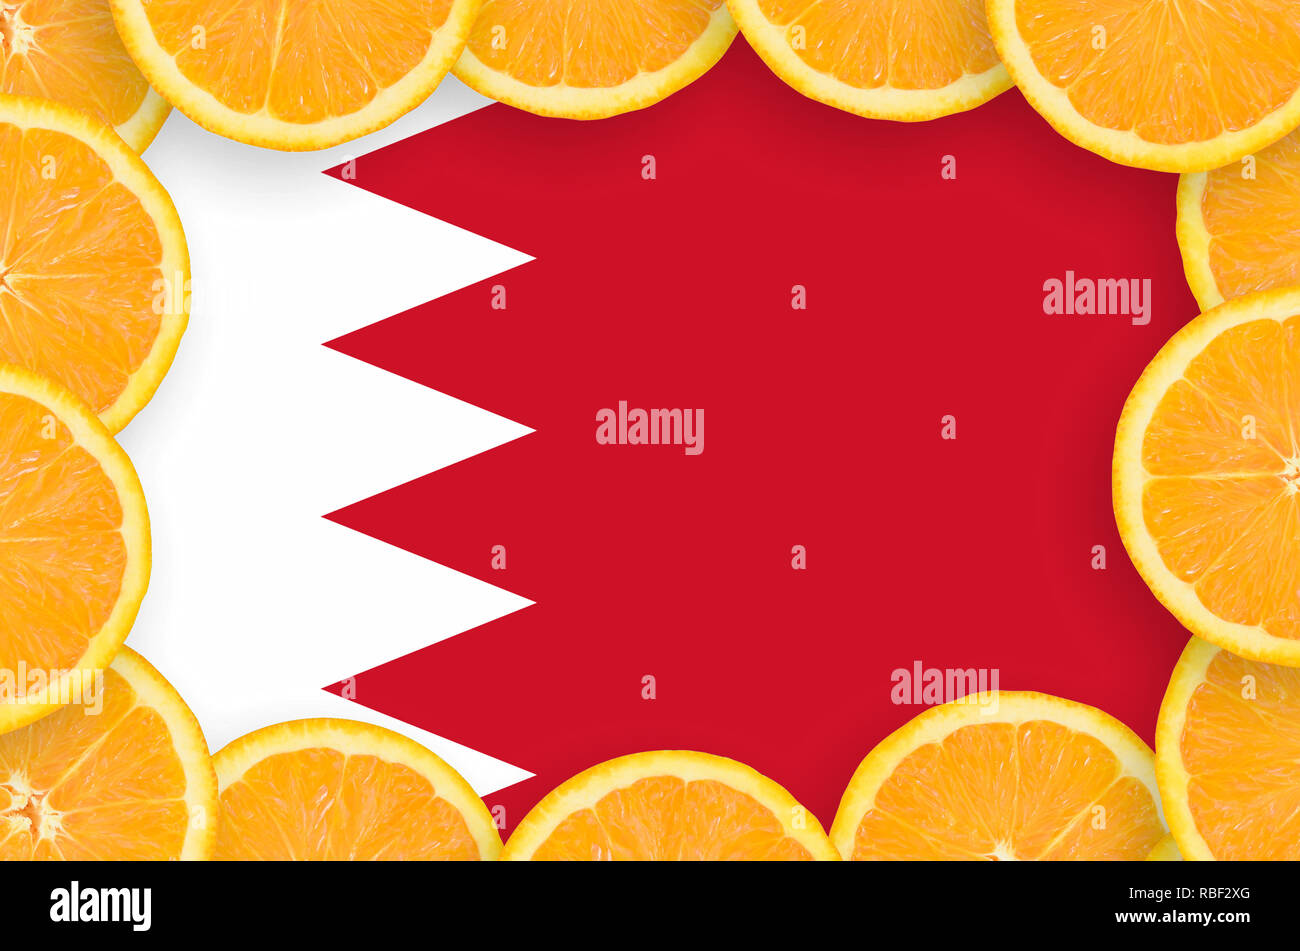 Drapeau de Bahreïn dans le cadre de tranches d'agrumes orange. Concept de croissance et de l'importation et l'exportation des agrumes Banque D'Images